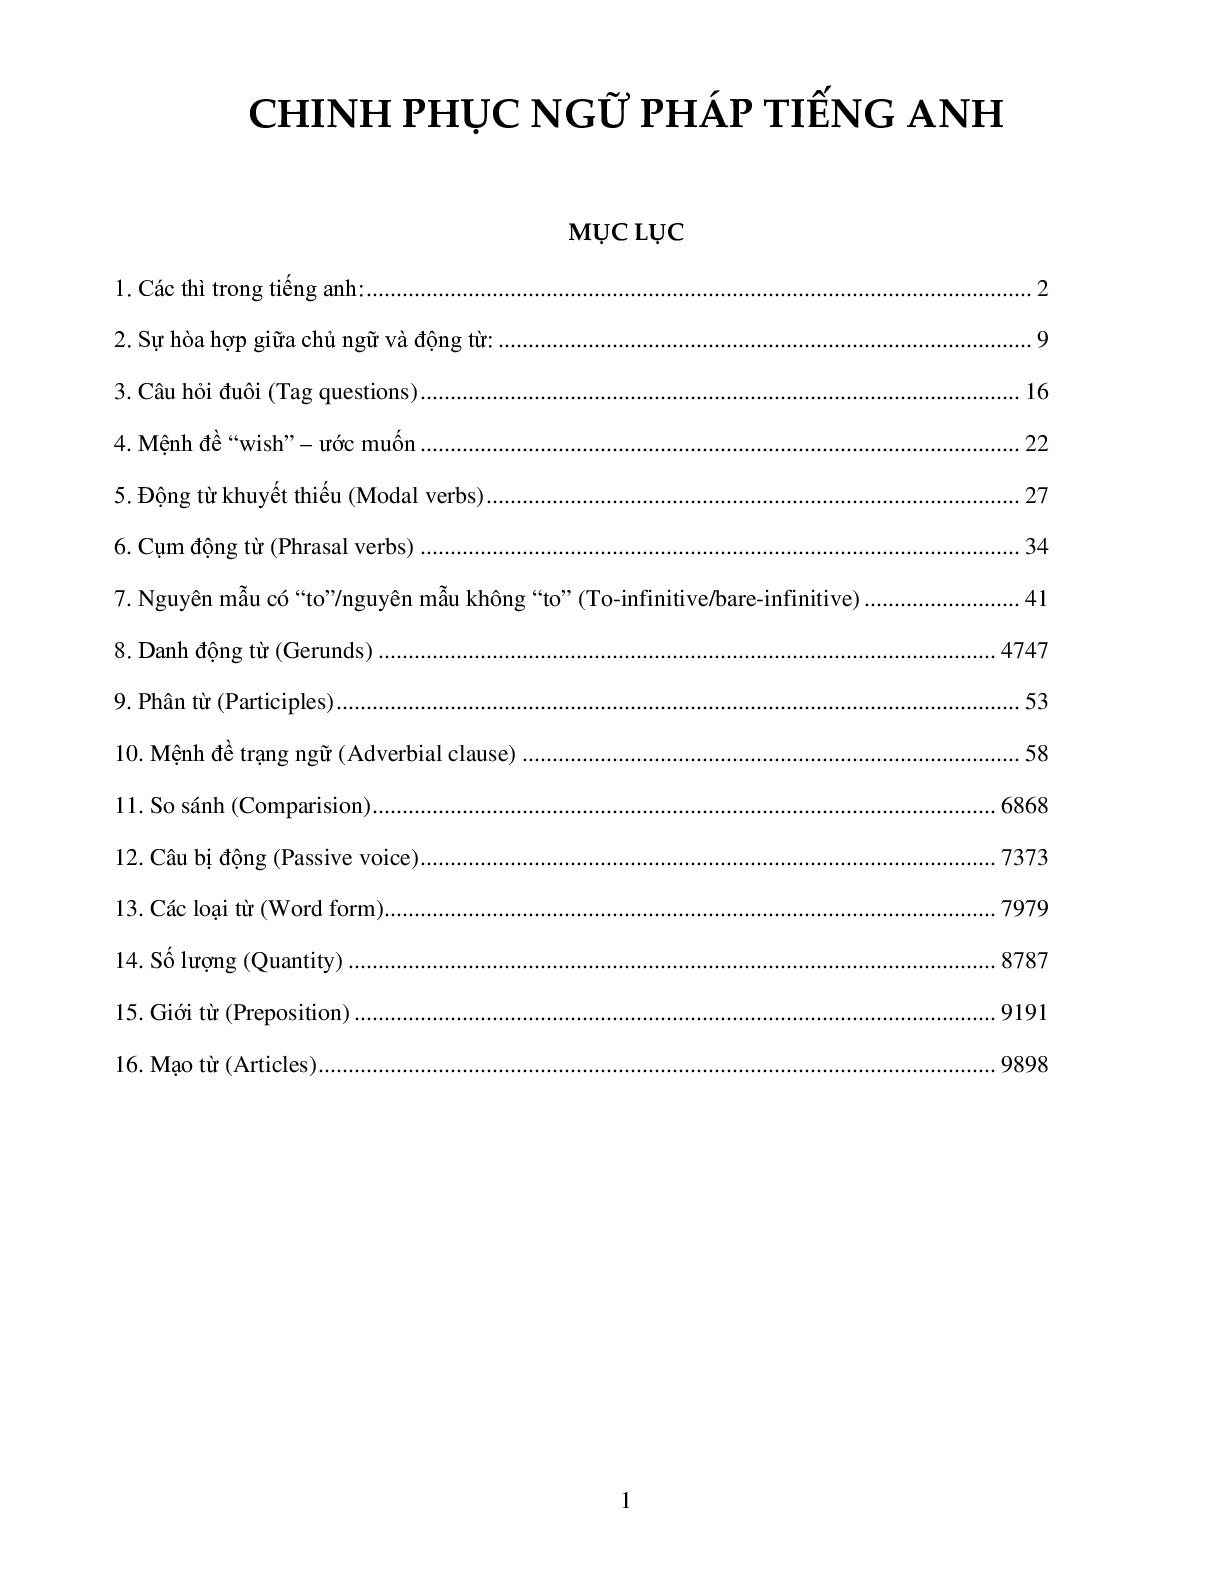 Chinh phục ngữ pháp tiếng Anh lớp 12 (trang 1)